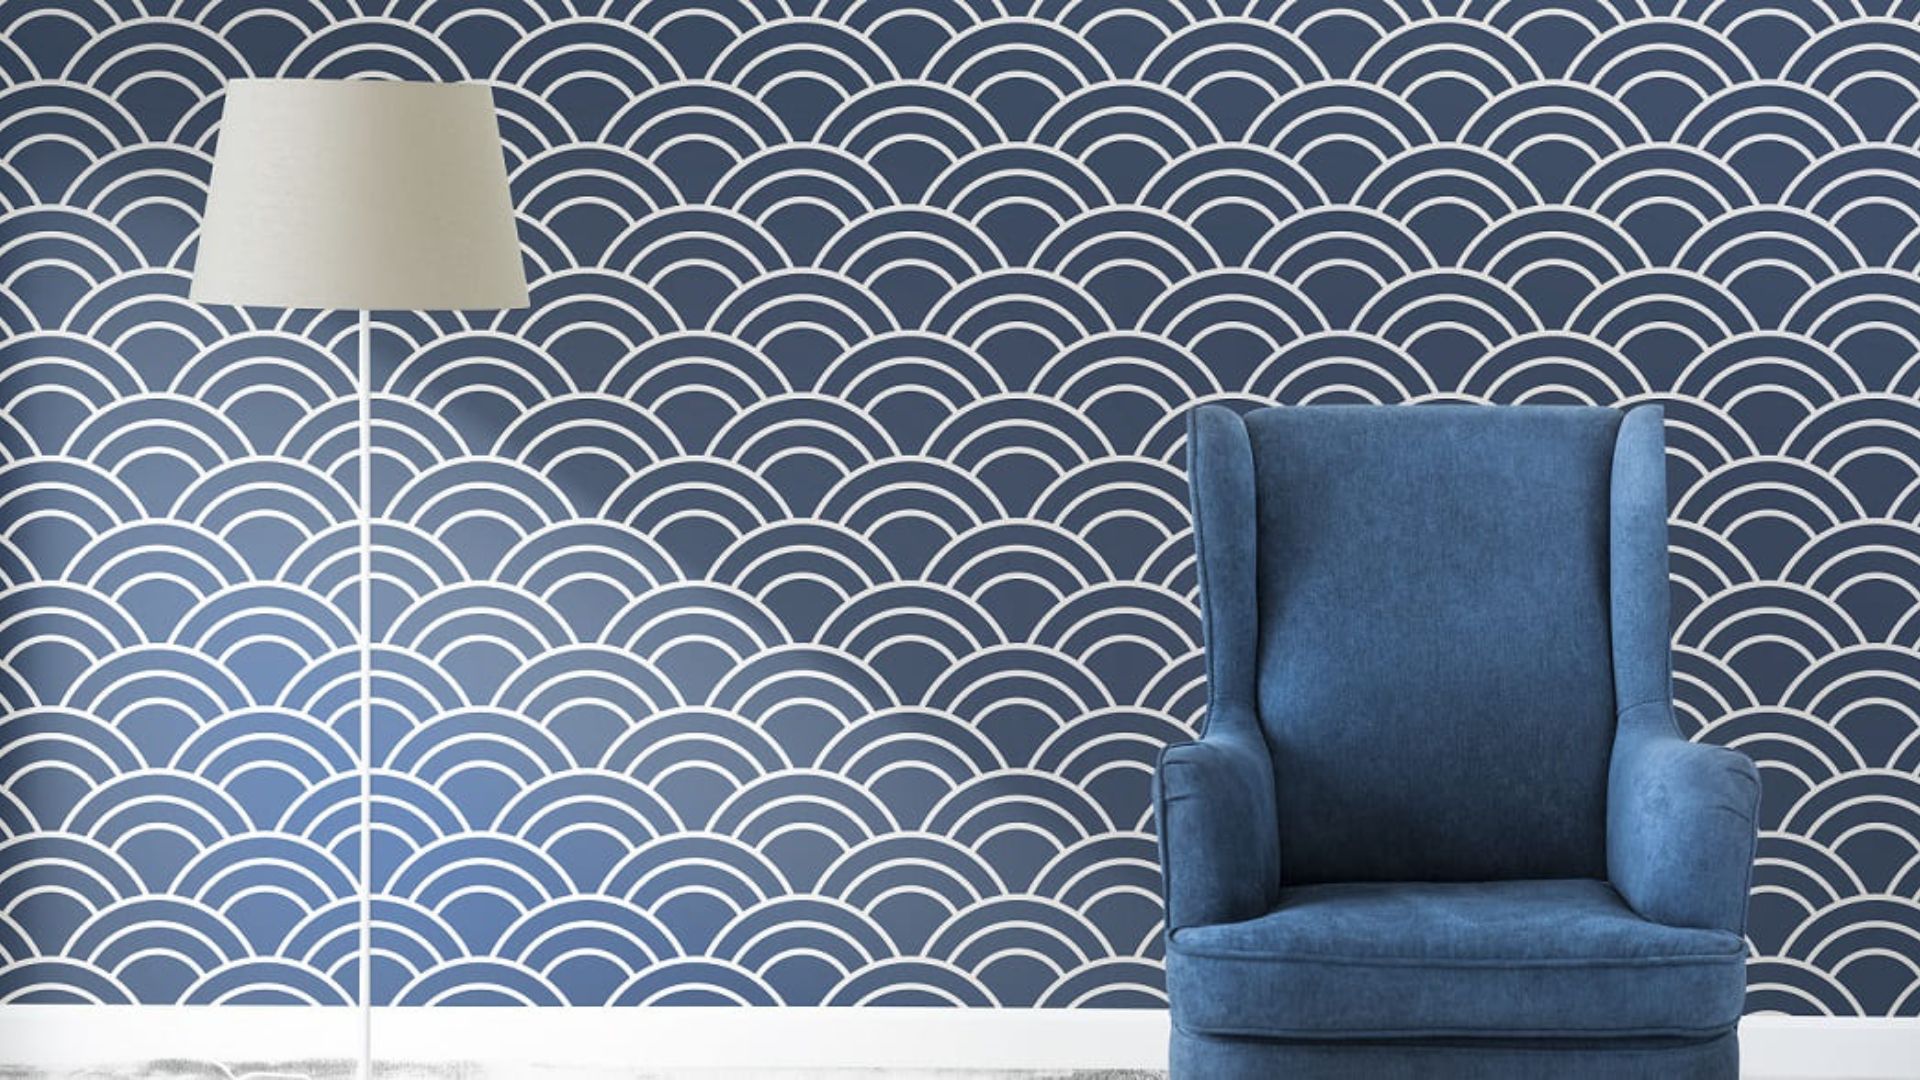  6 Trending Texture Design for Living Room